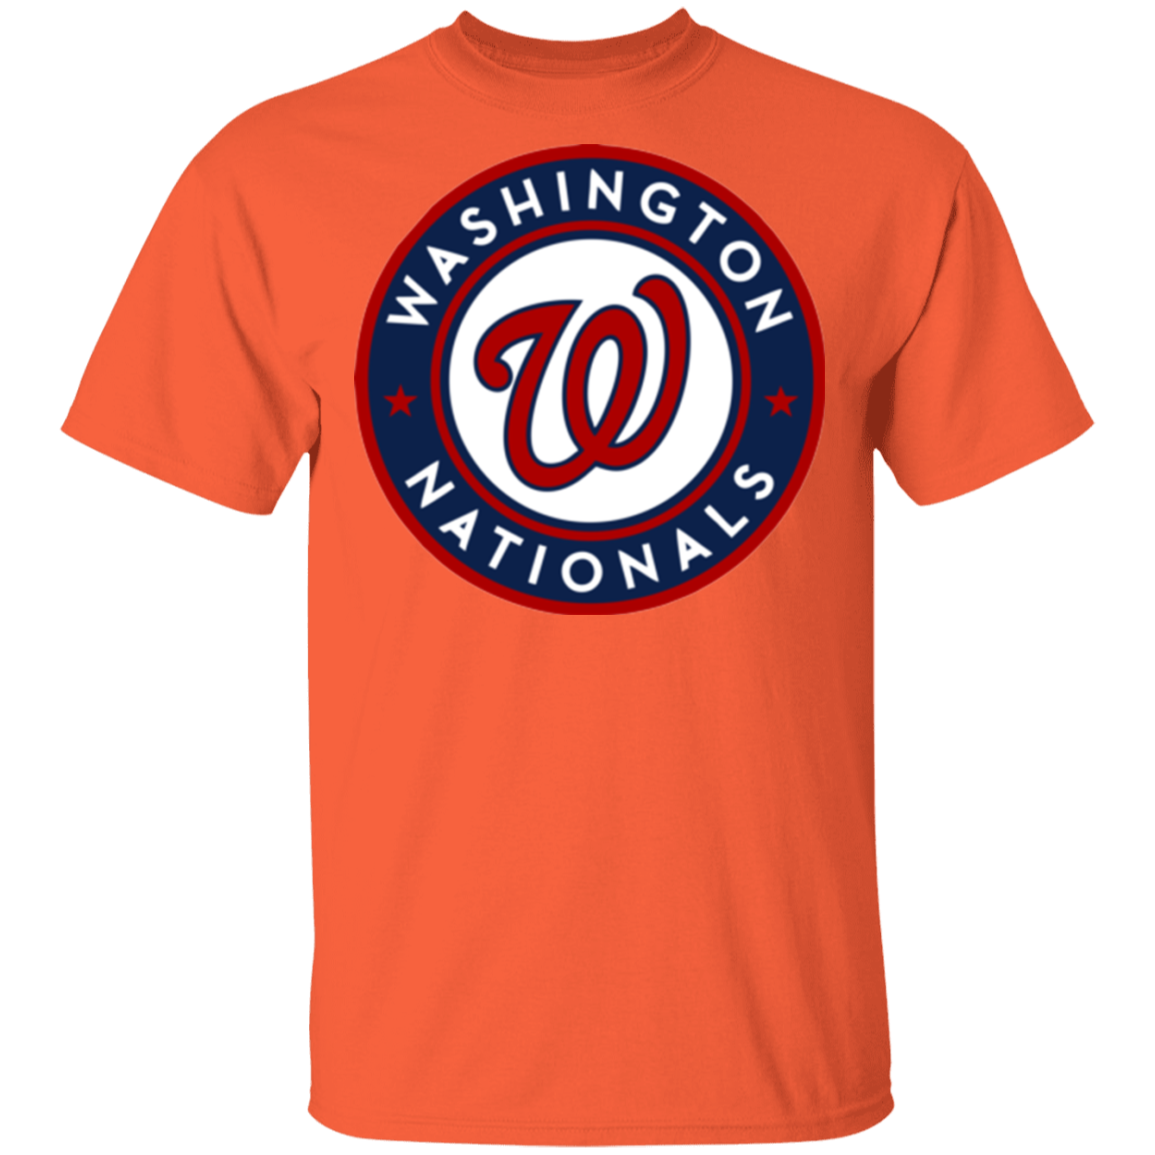 Washington Nationals Logo